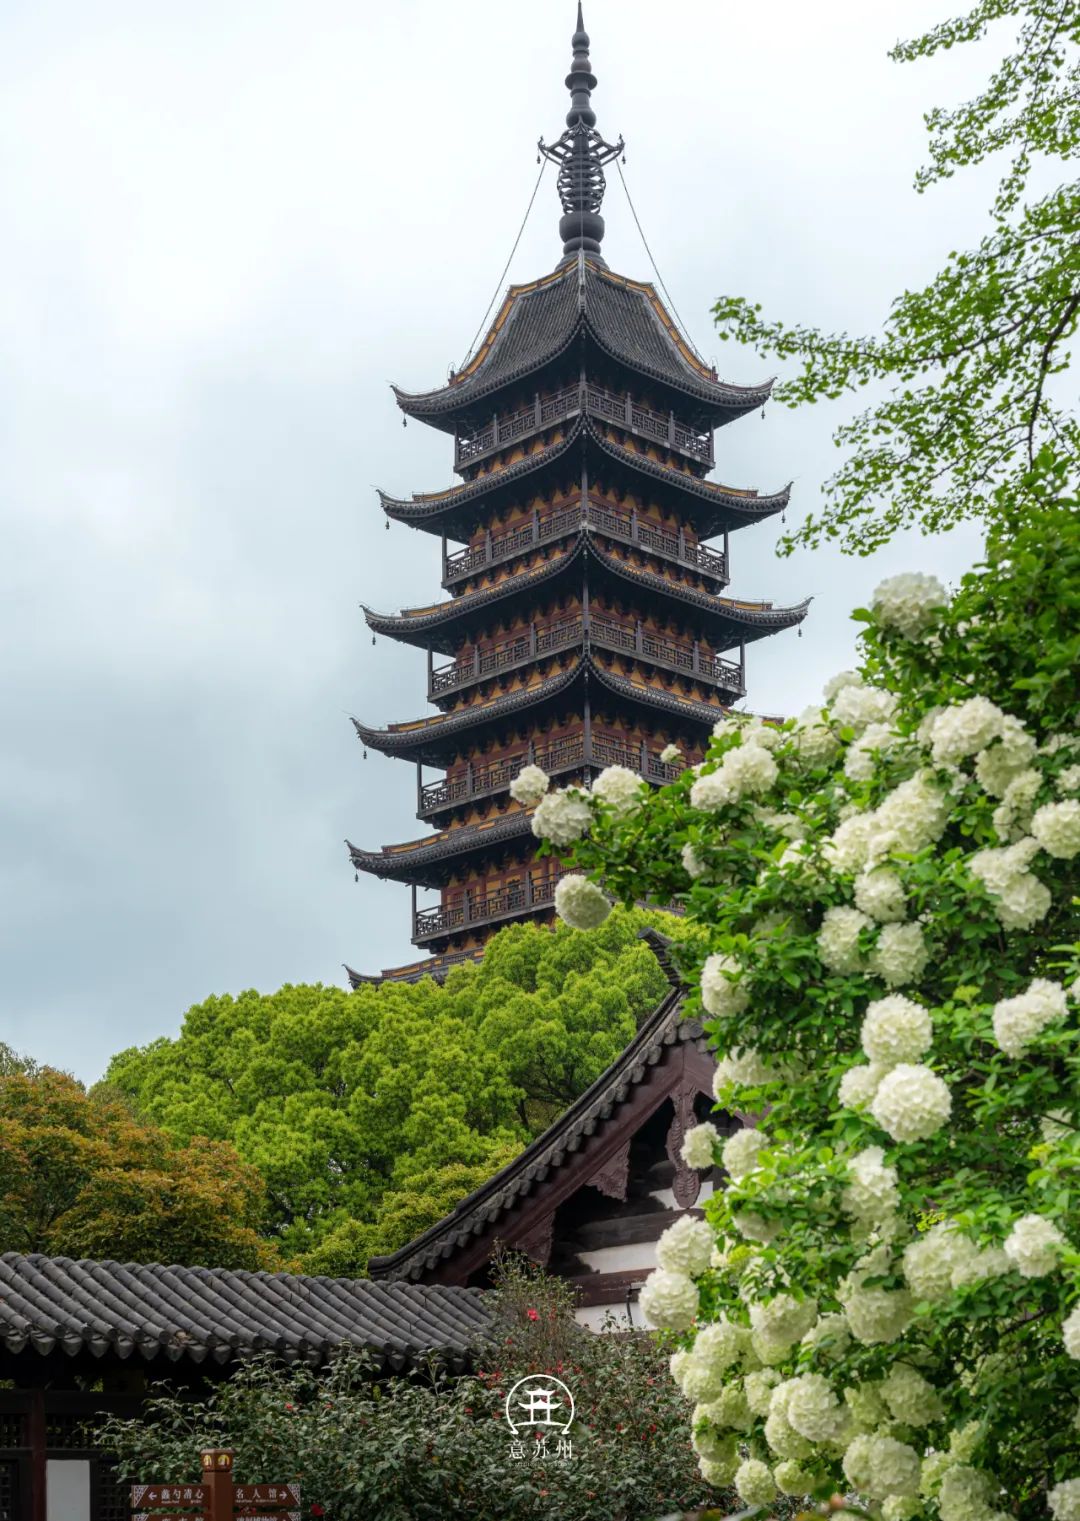 Tô Châu mùa hoa mộc tú cầu: Cả thành phố khoác lên tấm áo cầu hoa trắng tinh khôi, đứng đâu cũng có ảnh đẹp- Ảnh 1.